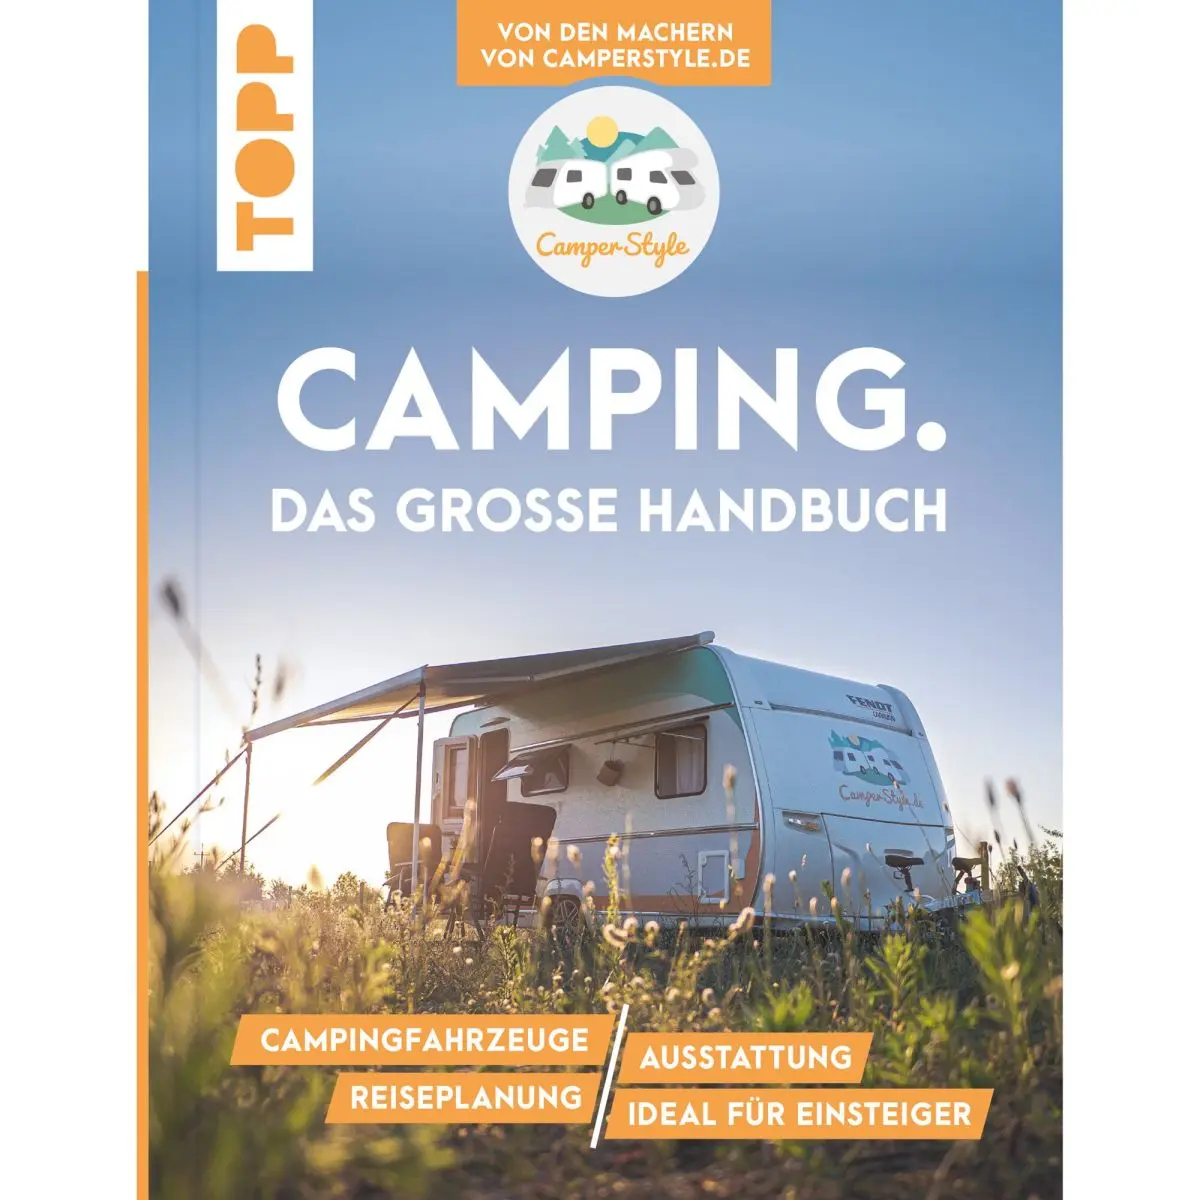 Camping. Das groe Handbuch. Von den Machern von CamperStyle.de